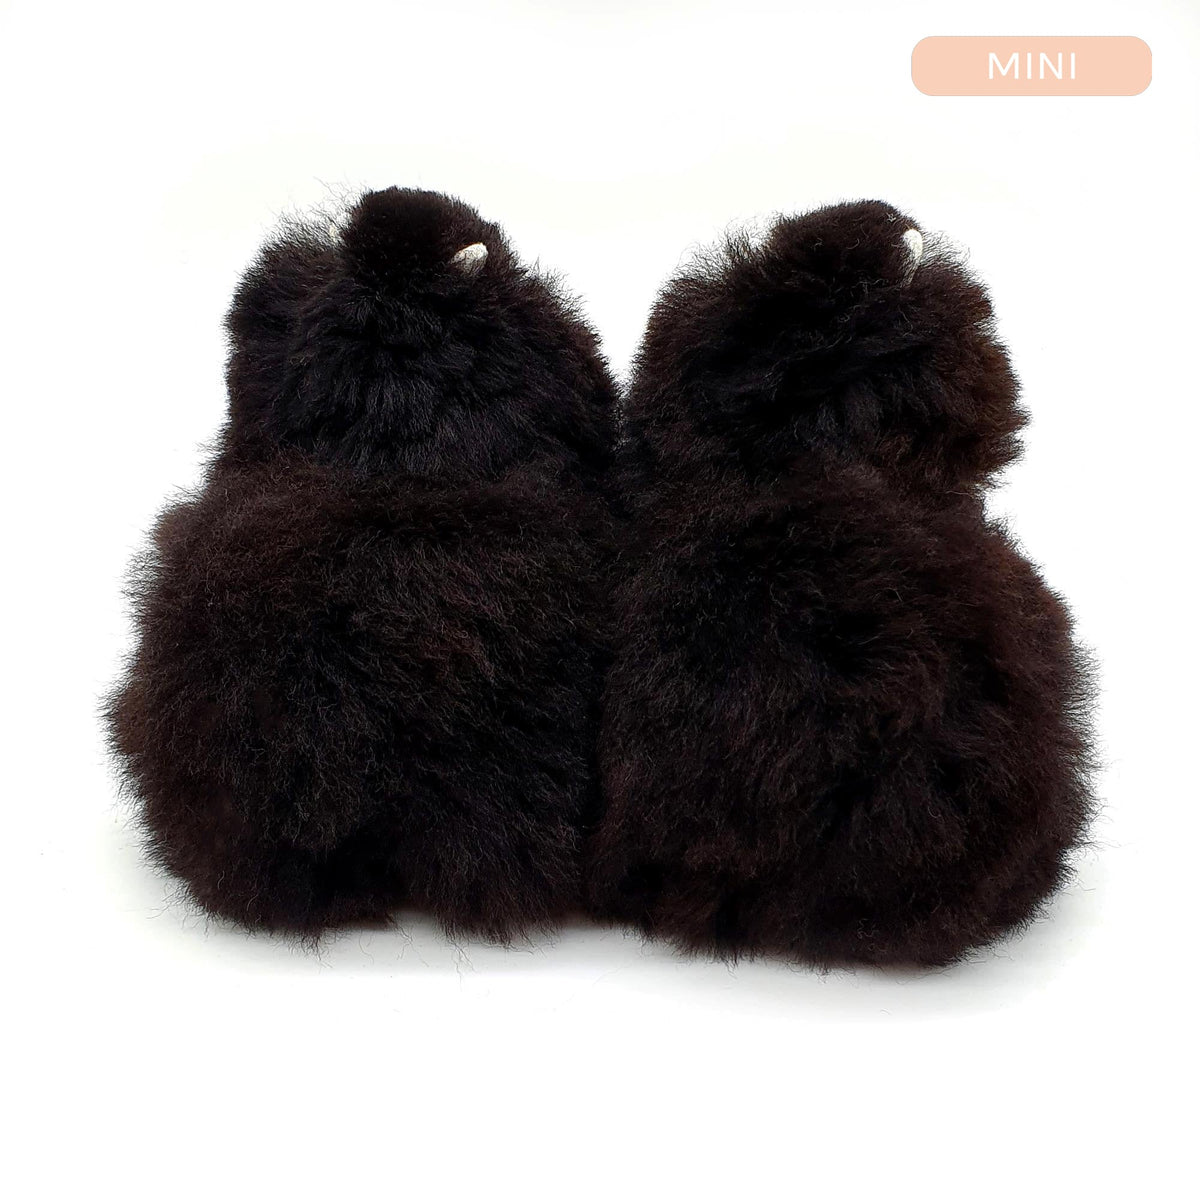 Cucciolo di pantera nera - Mini giocattolo alpaca (15 cm) - Edizione limitata